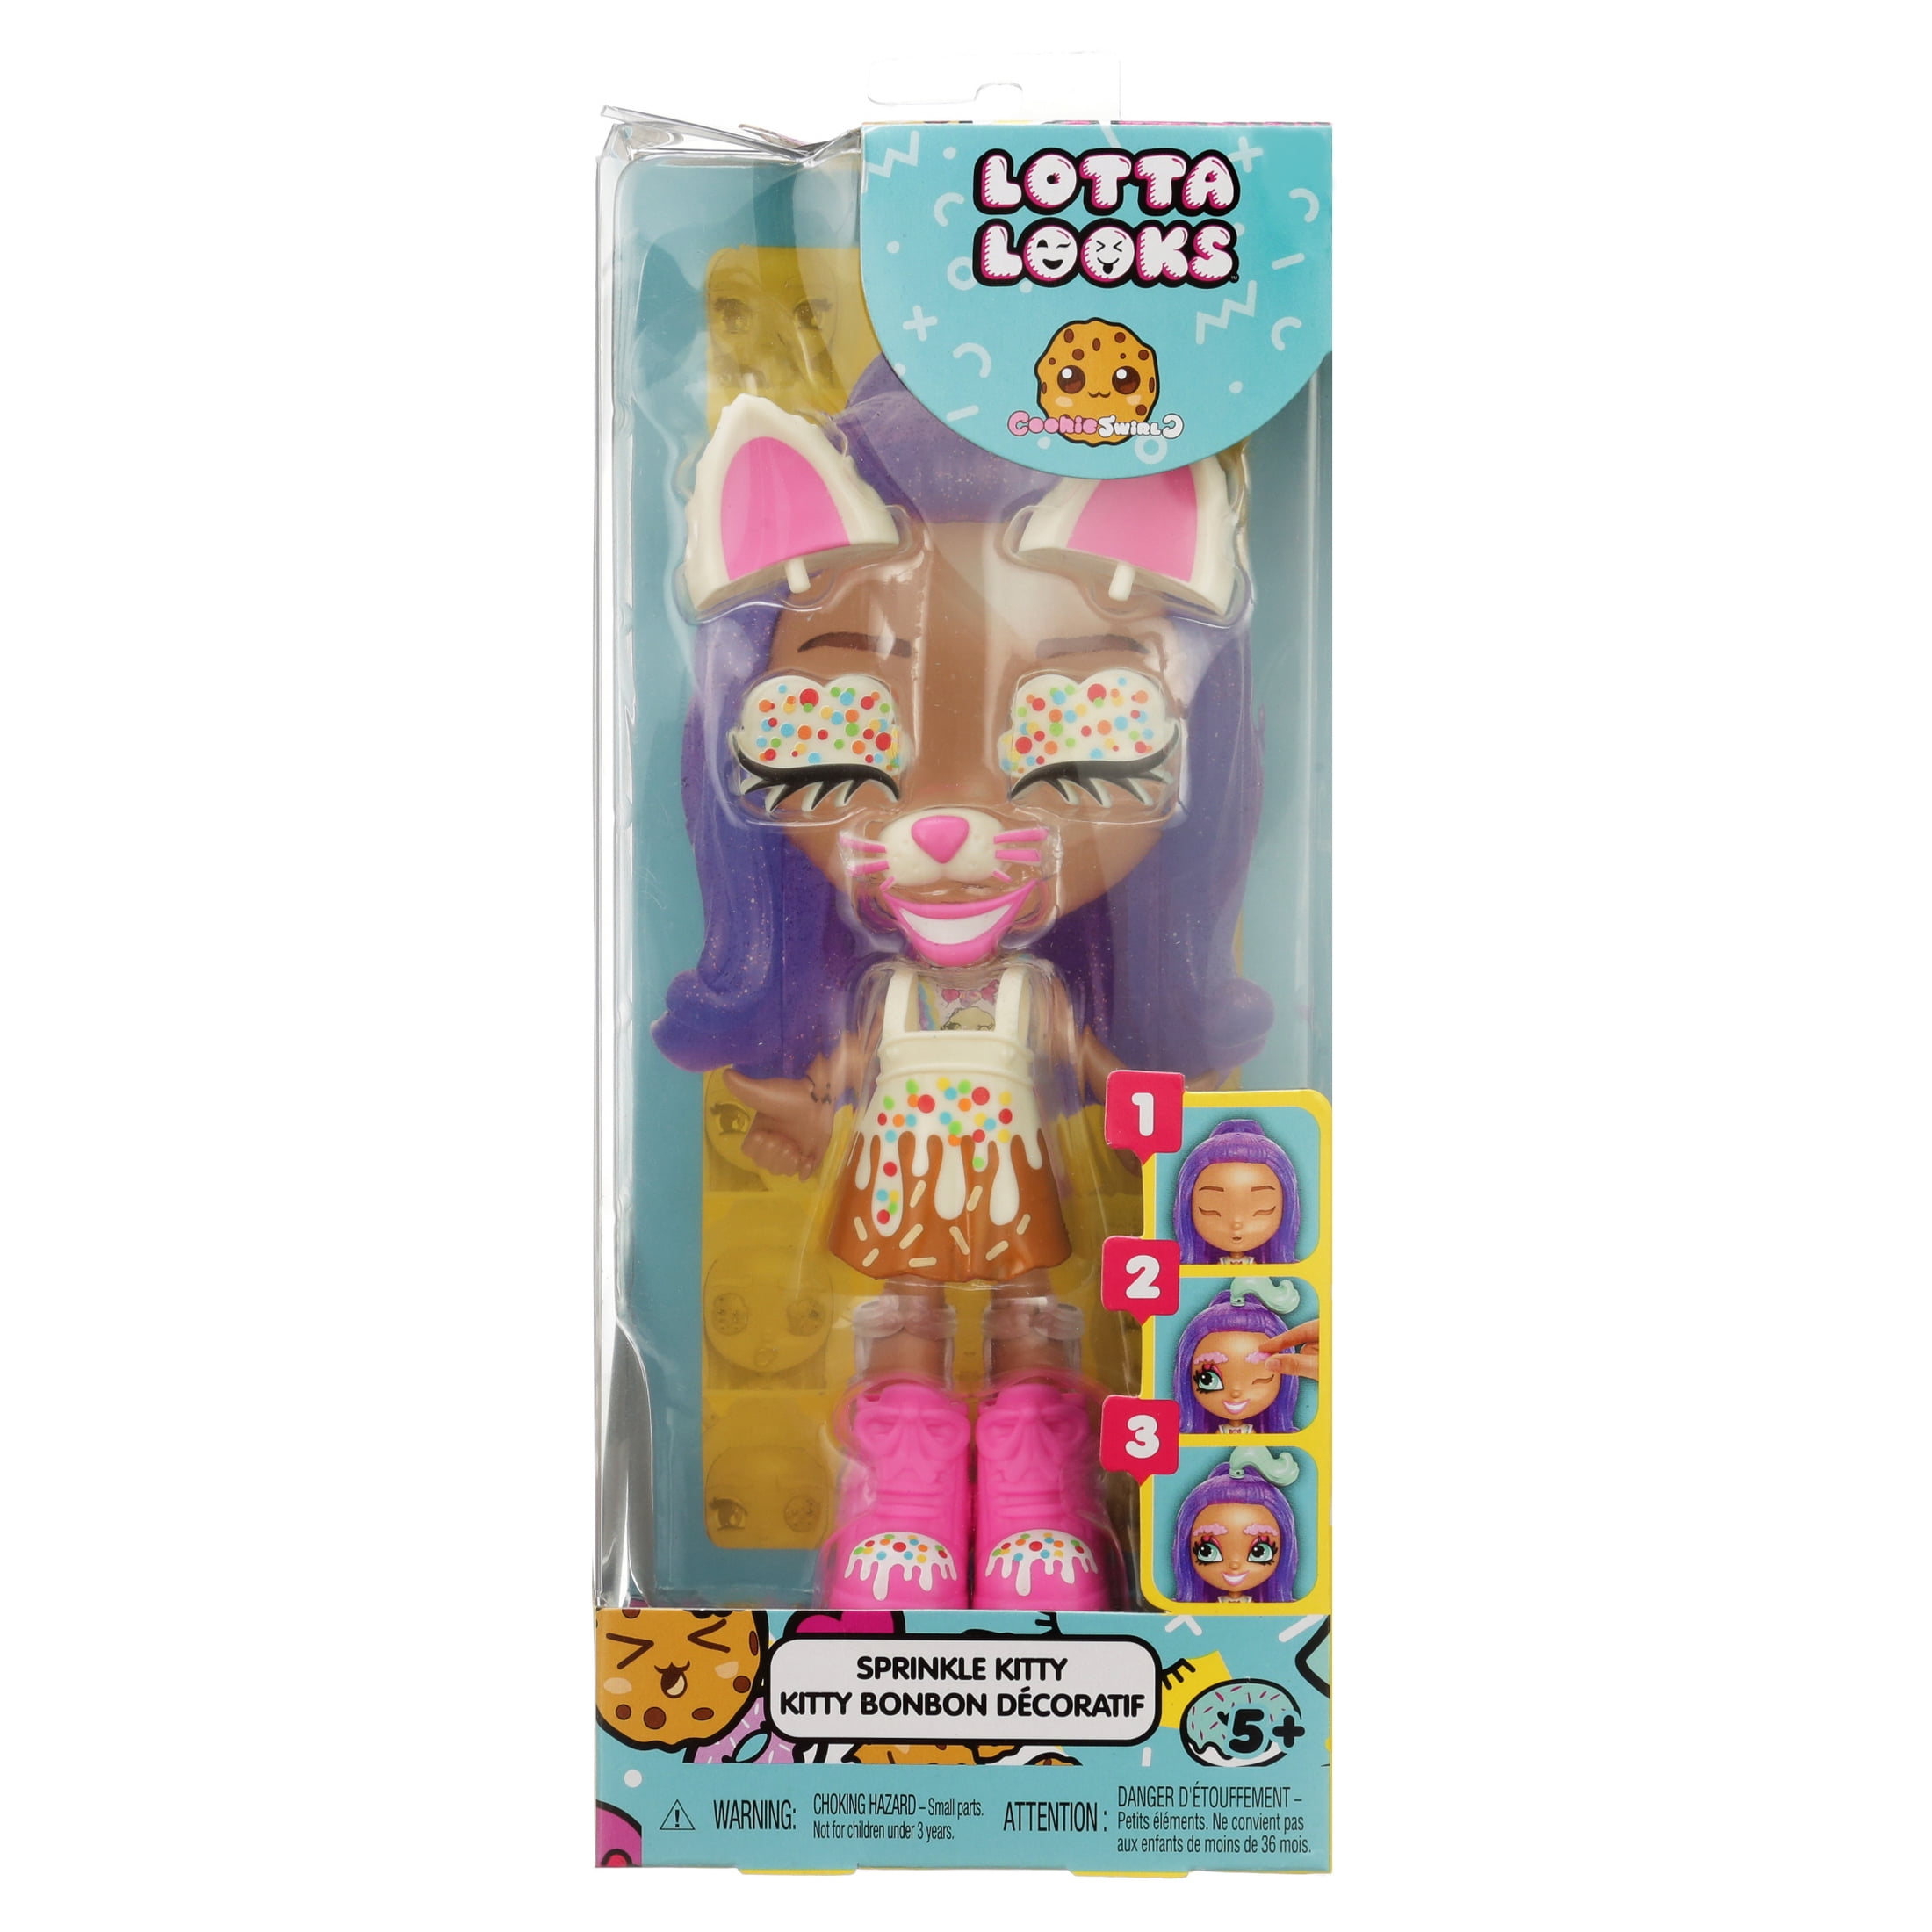 Lotta Looks Cookie Swirl Sprinkle Kitty Kitty Bonbon DECORATIF for sale online 